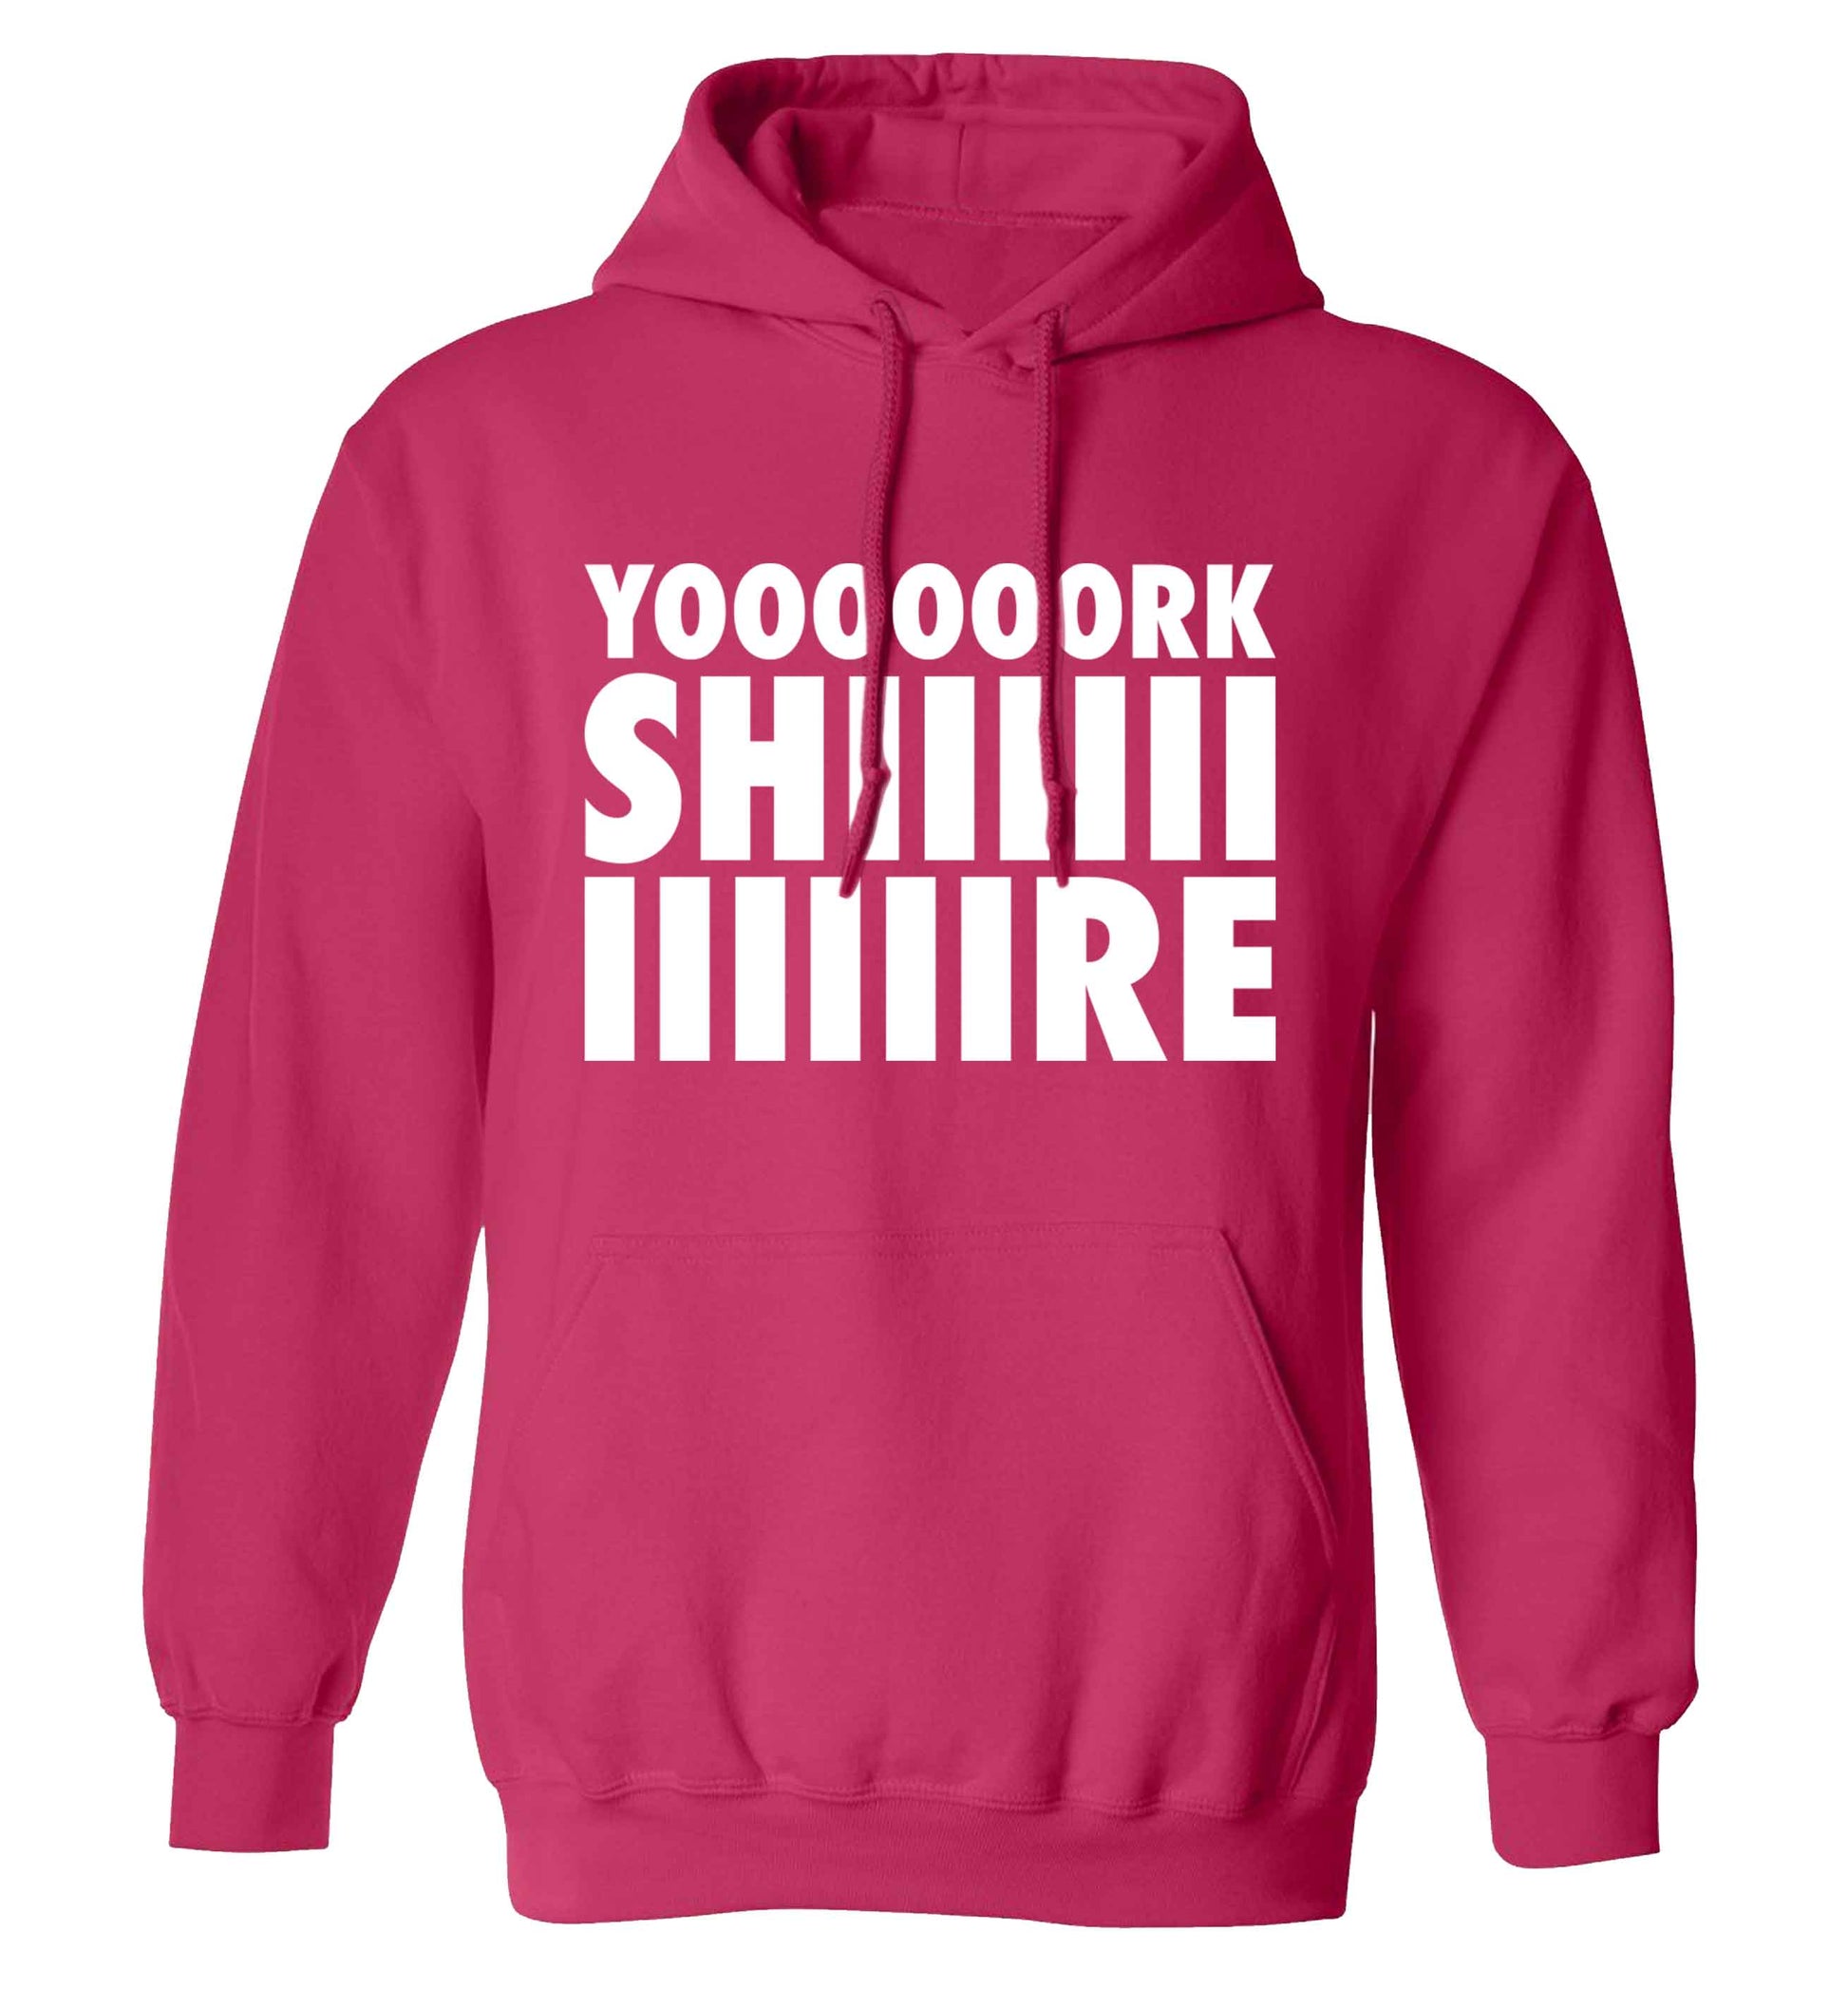 Yoooorkshiiiiire adults unisex pink hoodie 2XL